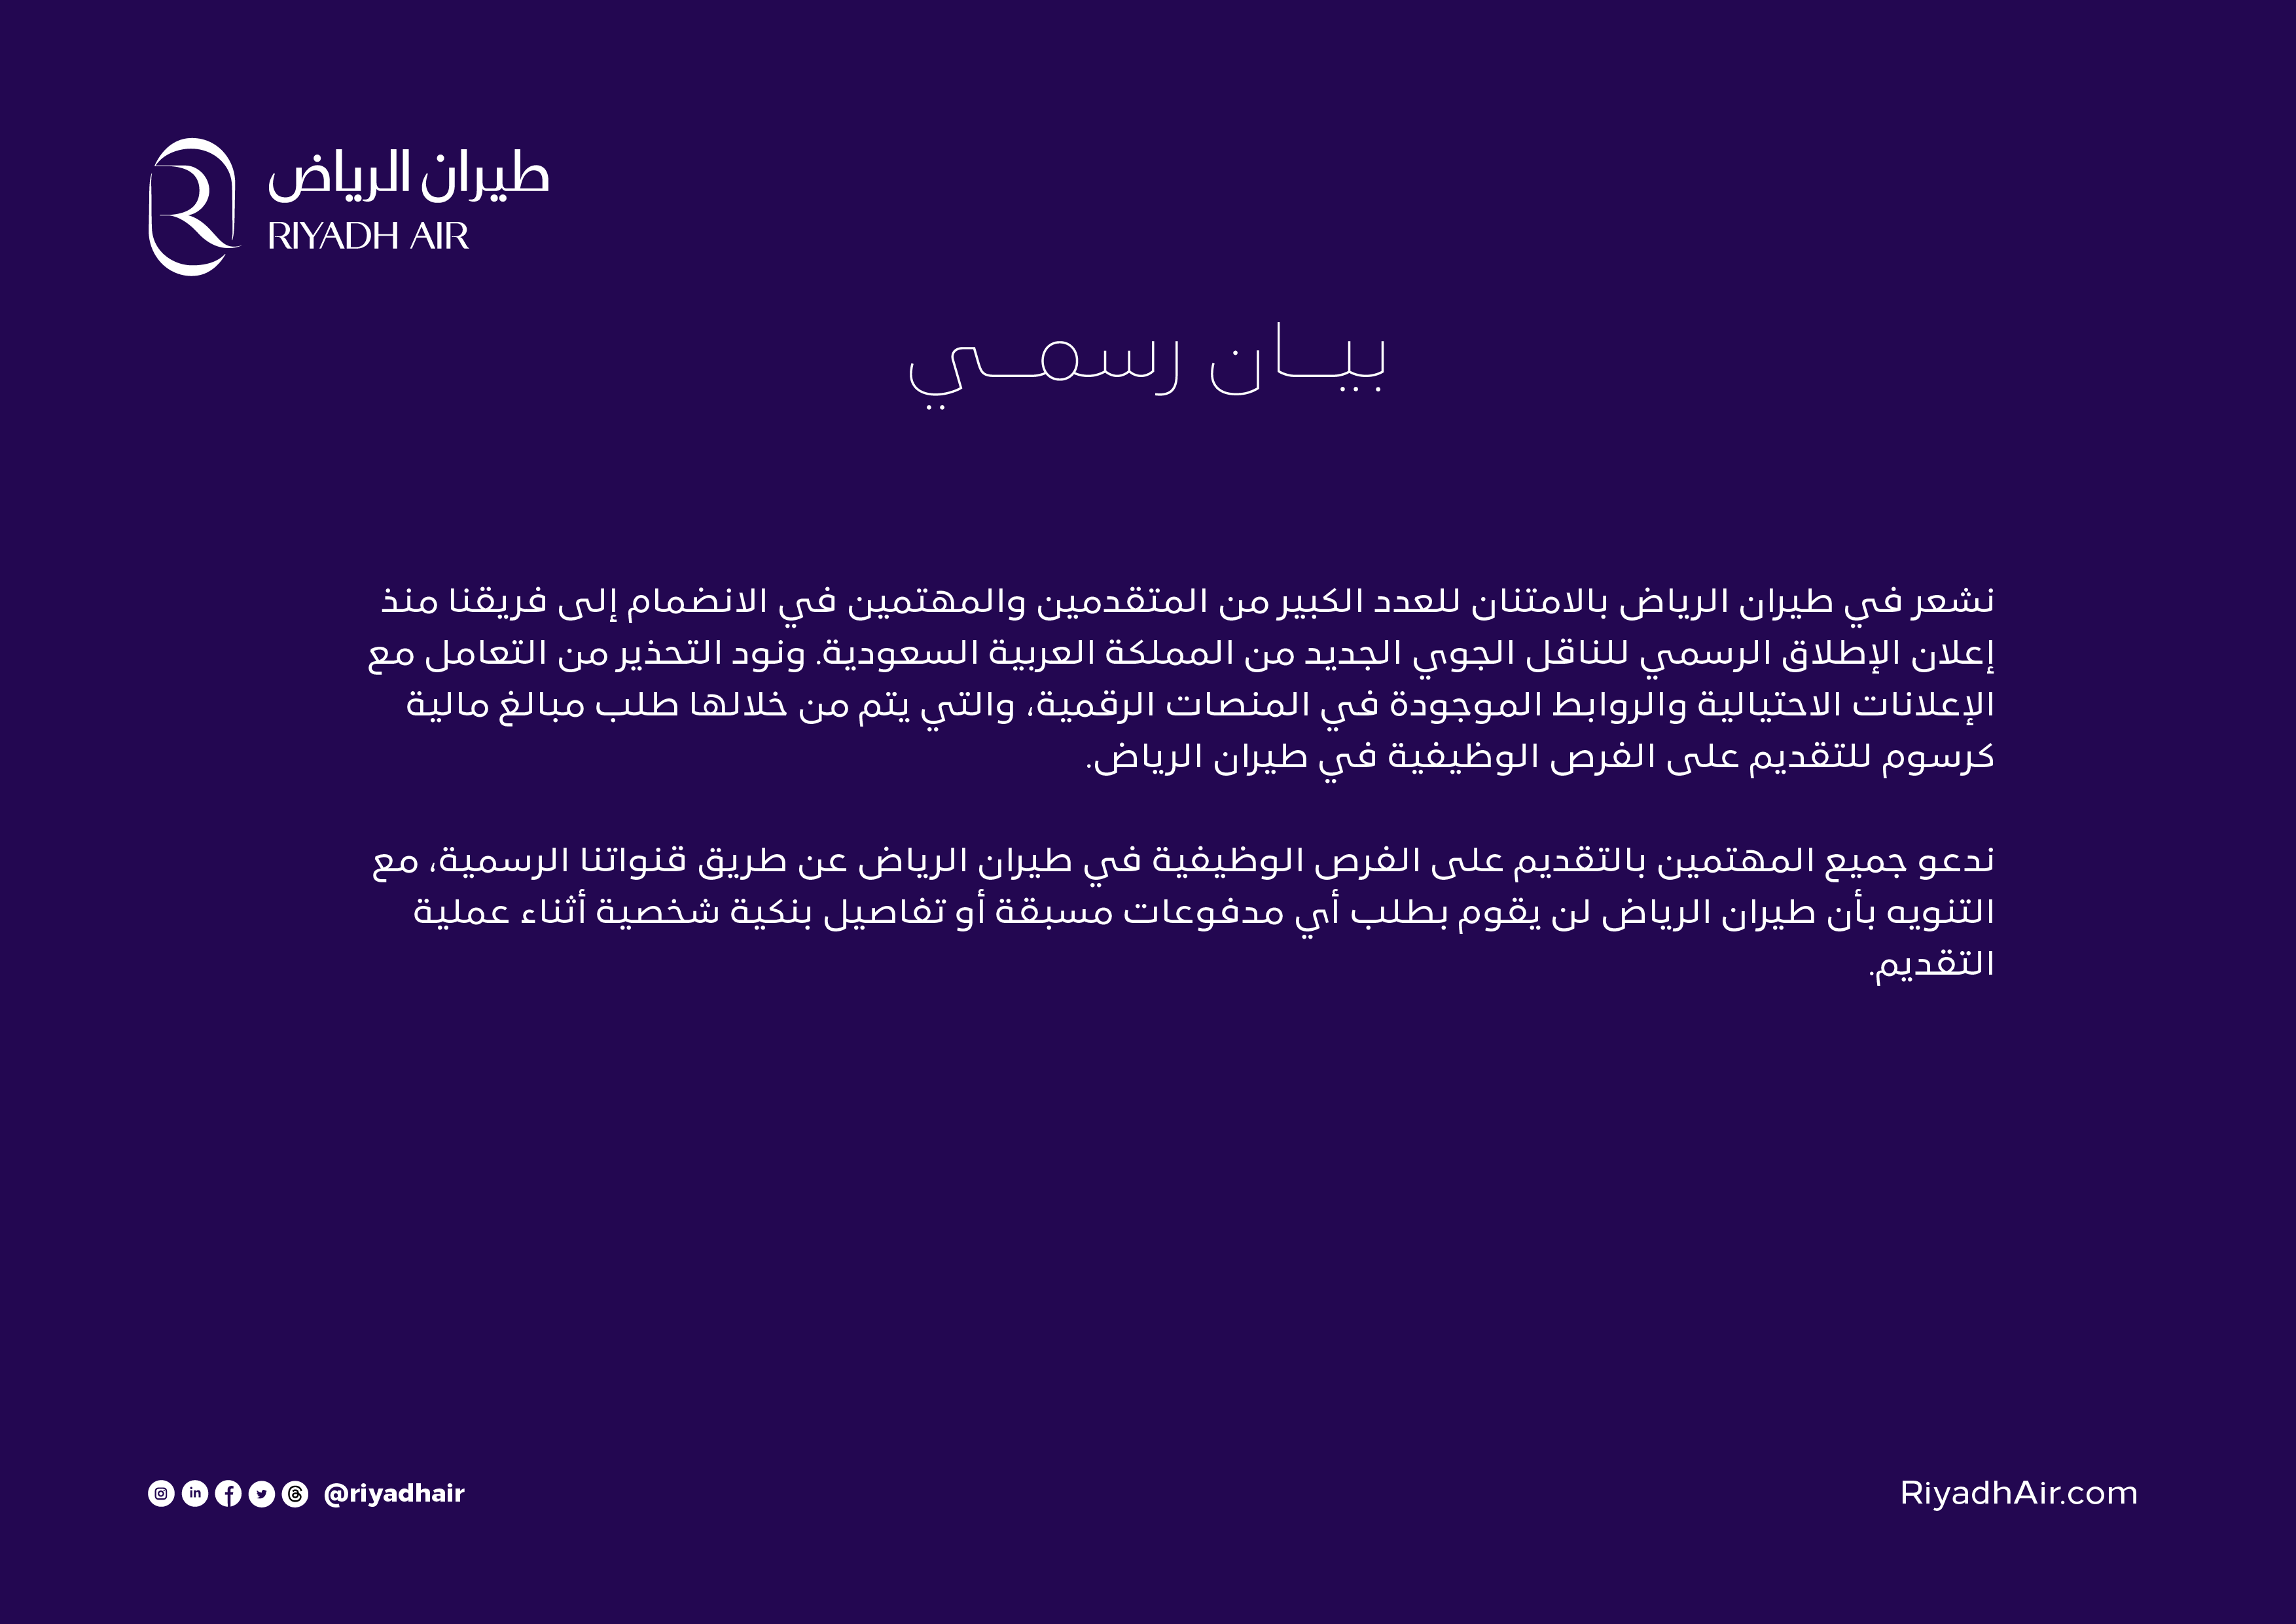 طيران الرياض: لا نطلب أي رسوم من المتقدمين للوظائف